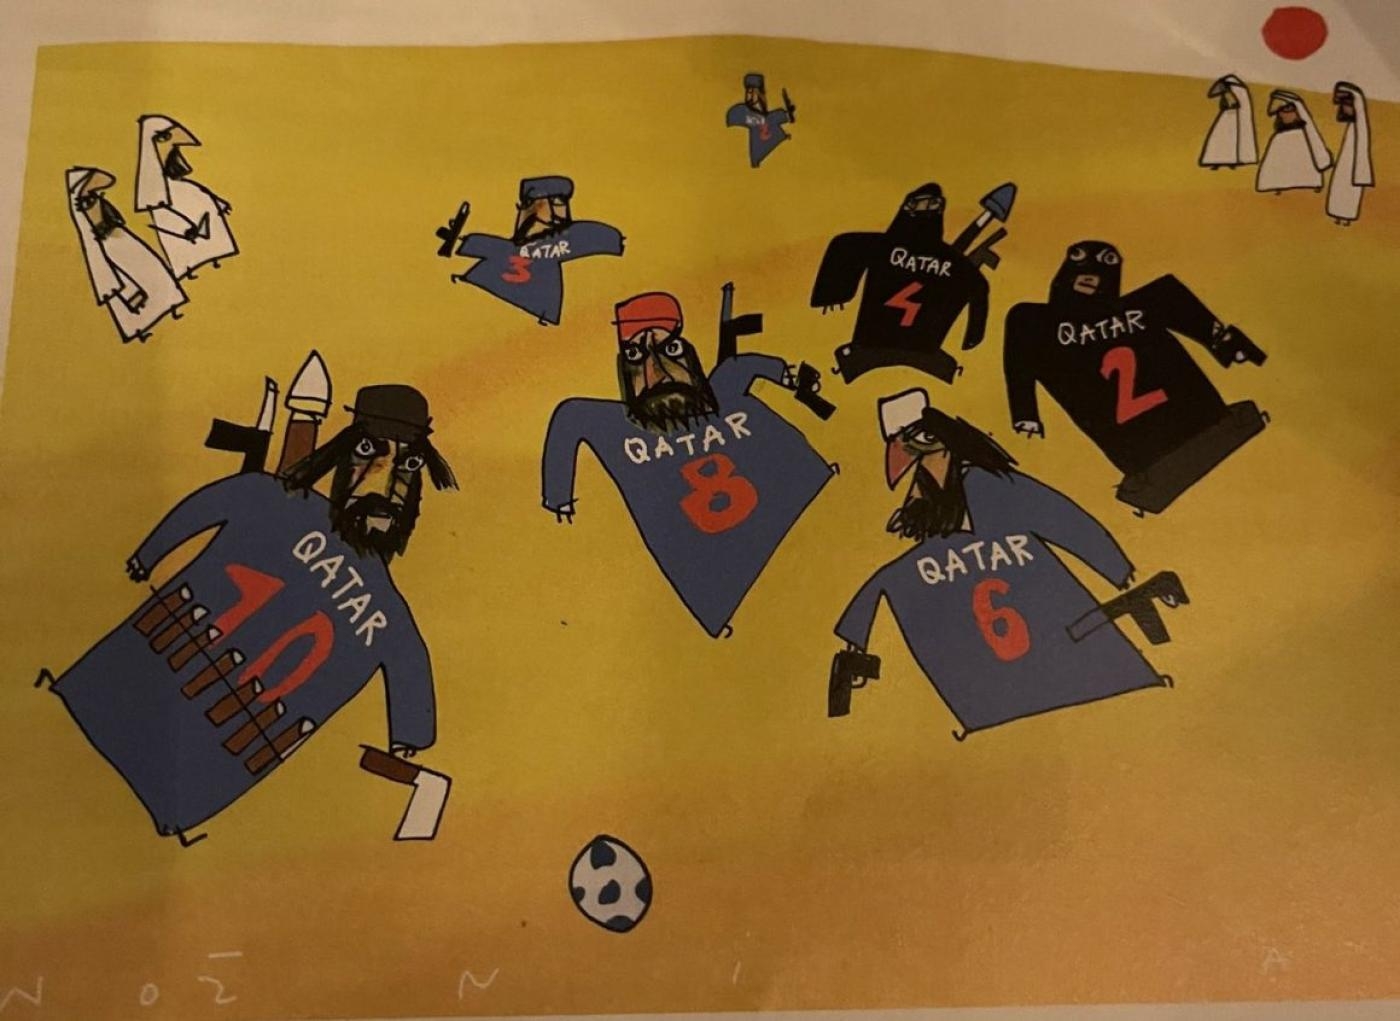 Dans son numéro d’octobre des Dossiers du Canard, Le Canard enchaîné publie une caricature de l’équipe nationale qatarie (Twitter/capture d’écran)